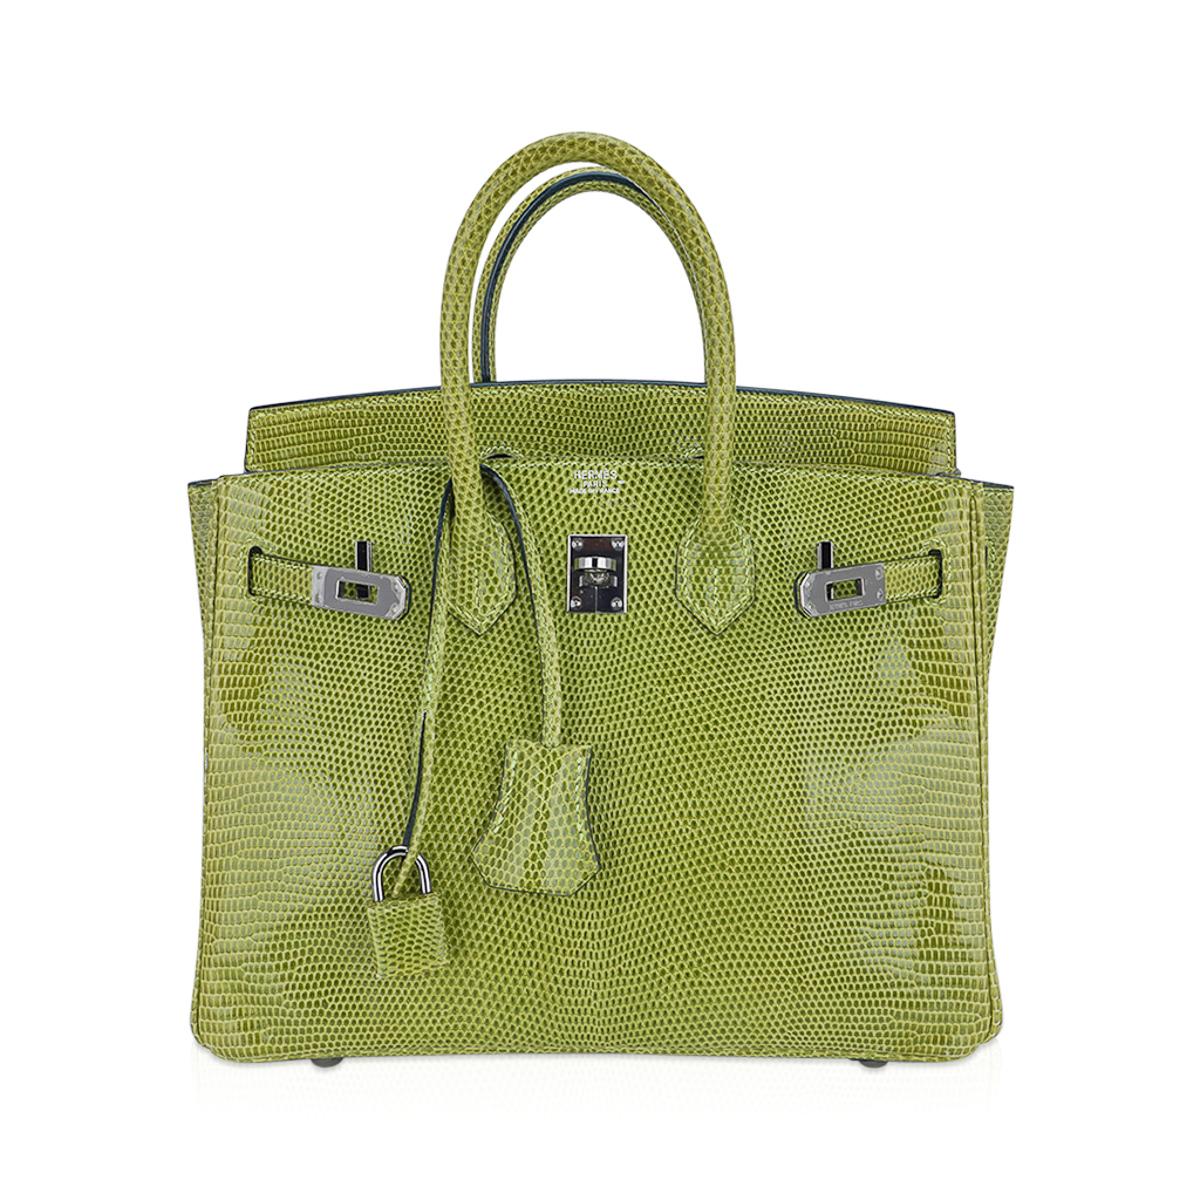 Hermès Birkin 25 Tasche Vert Anis Eidechse mit Palladiumbeschlägen (Braun) im Angebot